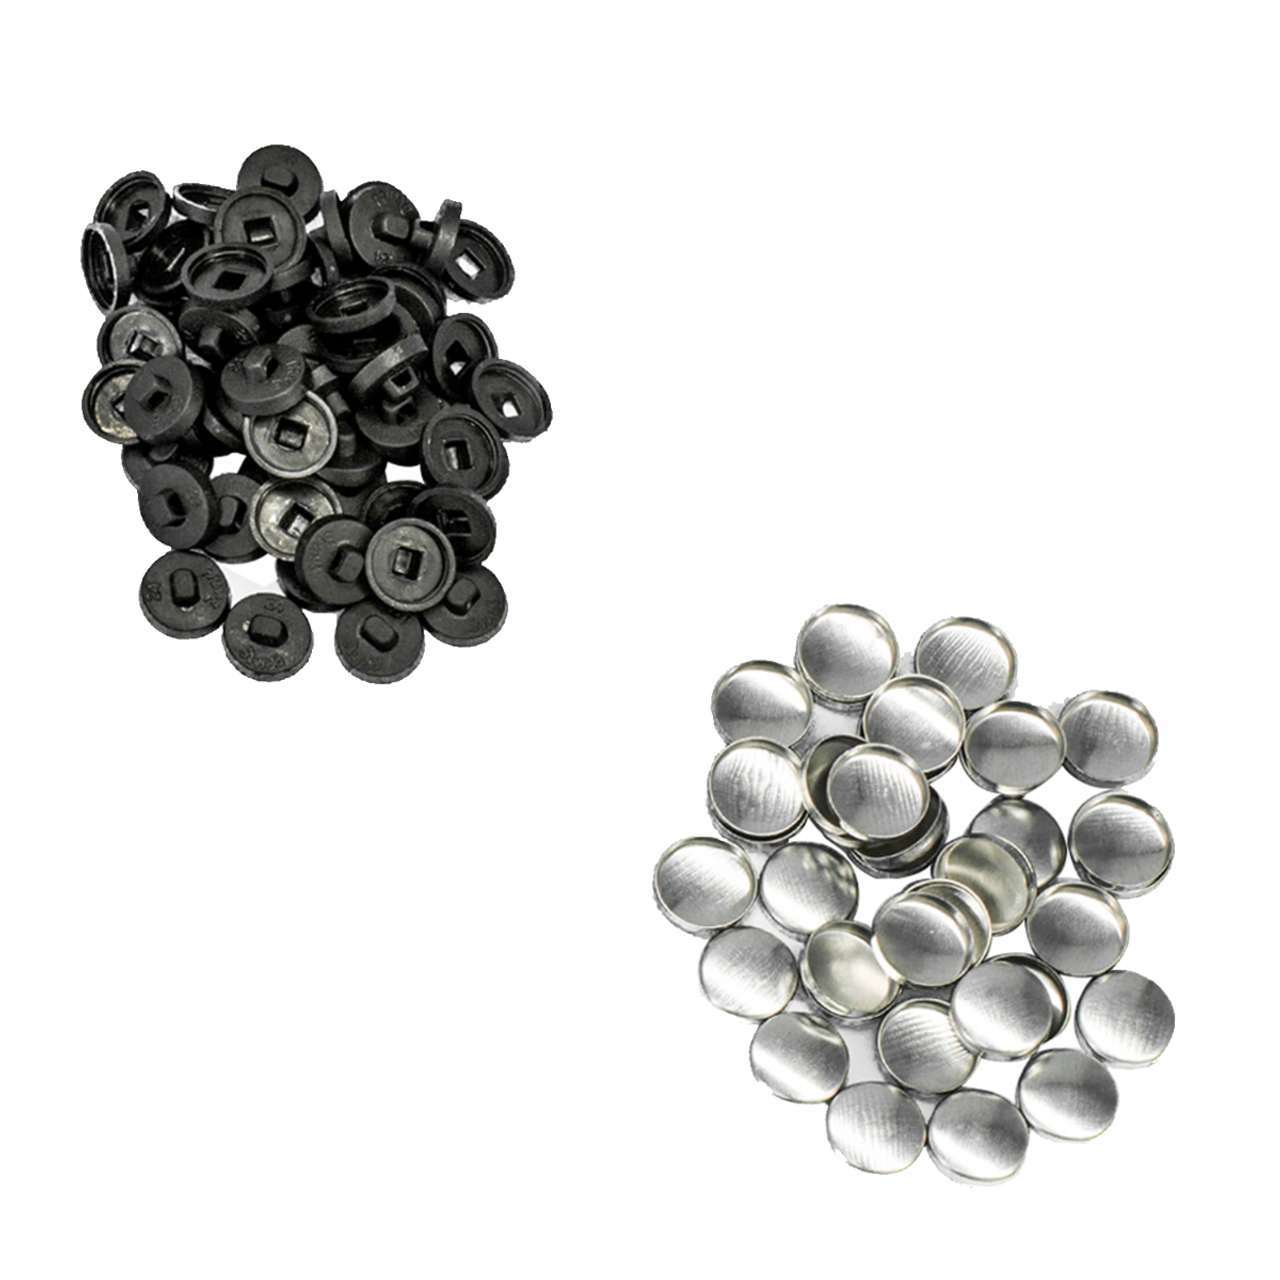 Aluminium / Plastic Button Blanks - (Pack of 50)